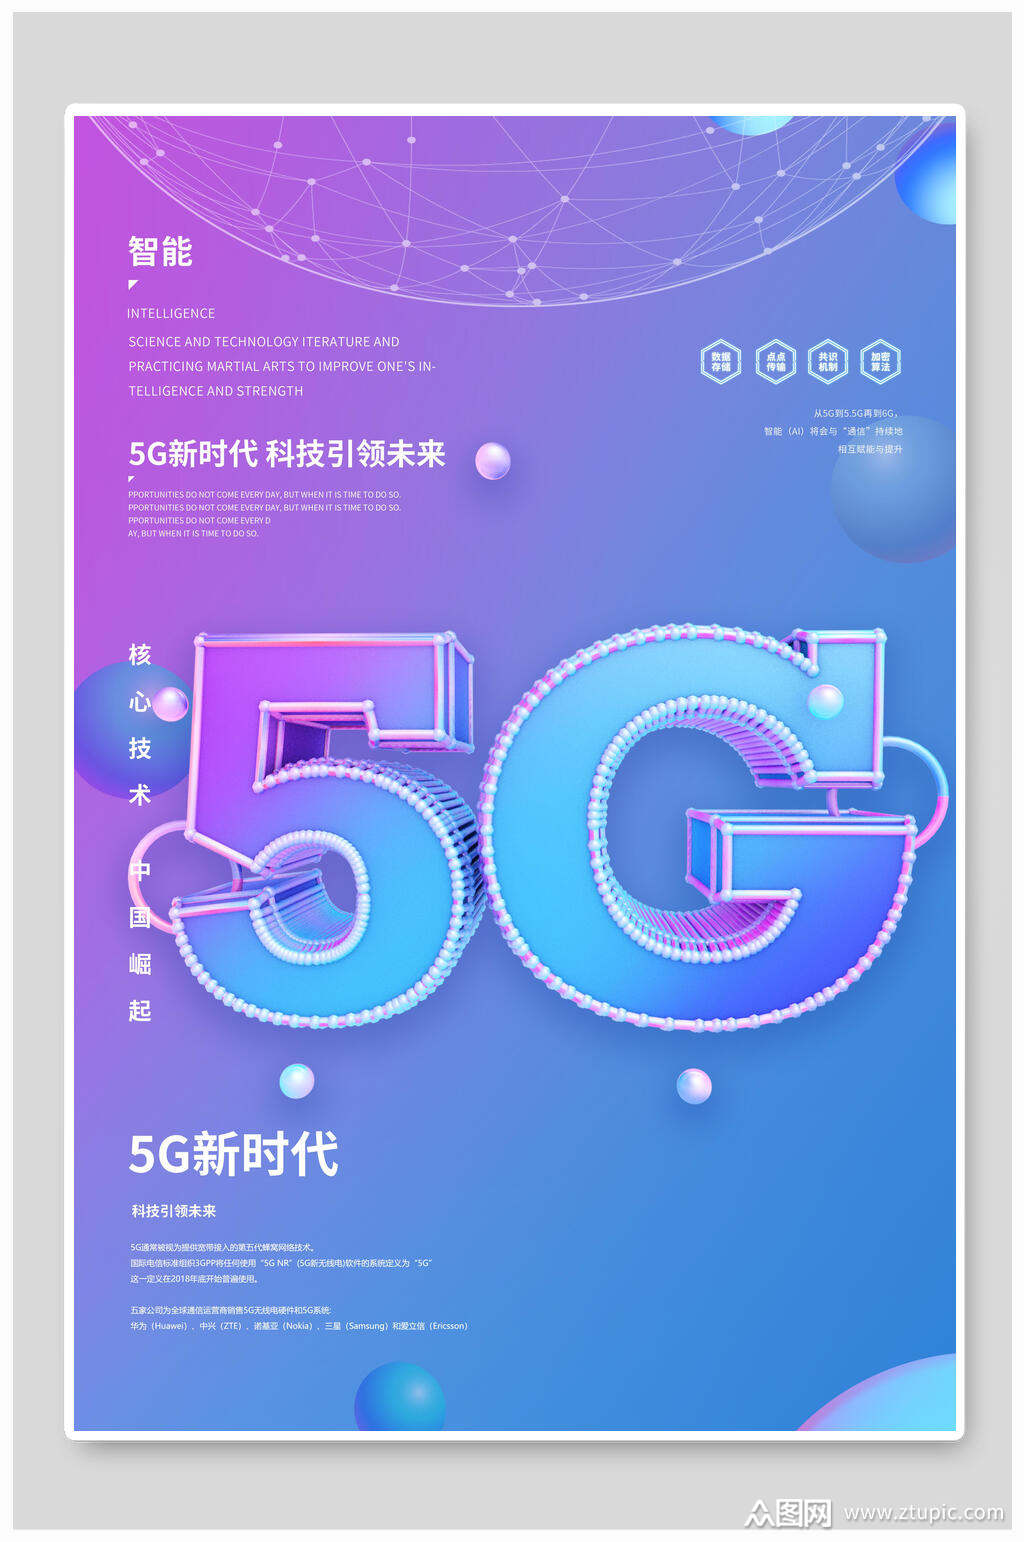 5G 网络：开启新时代，带来科技进步与生活方式革新  第7张